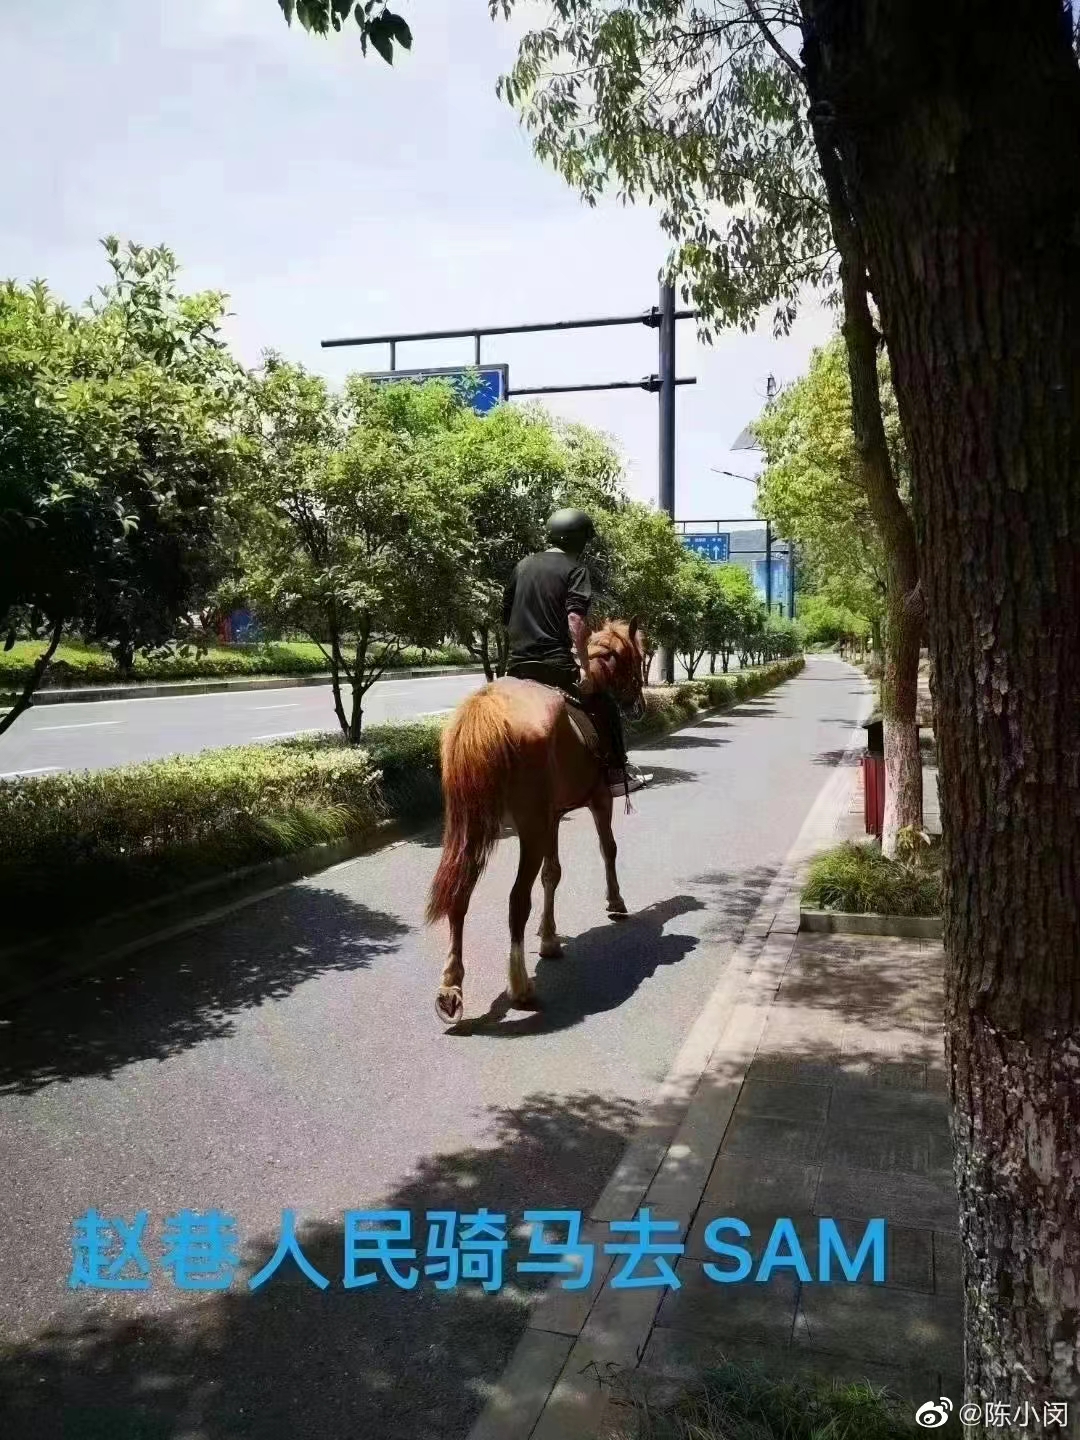 상하이 시 당국이 자동차 도로 운행을 금지 시키자, 말을 타고 이동하는 사람이 등장했다. (출처: 중국 웨이보)